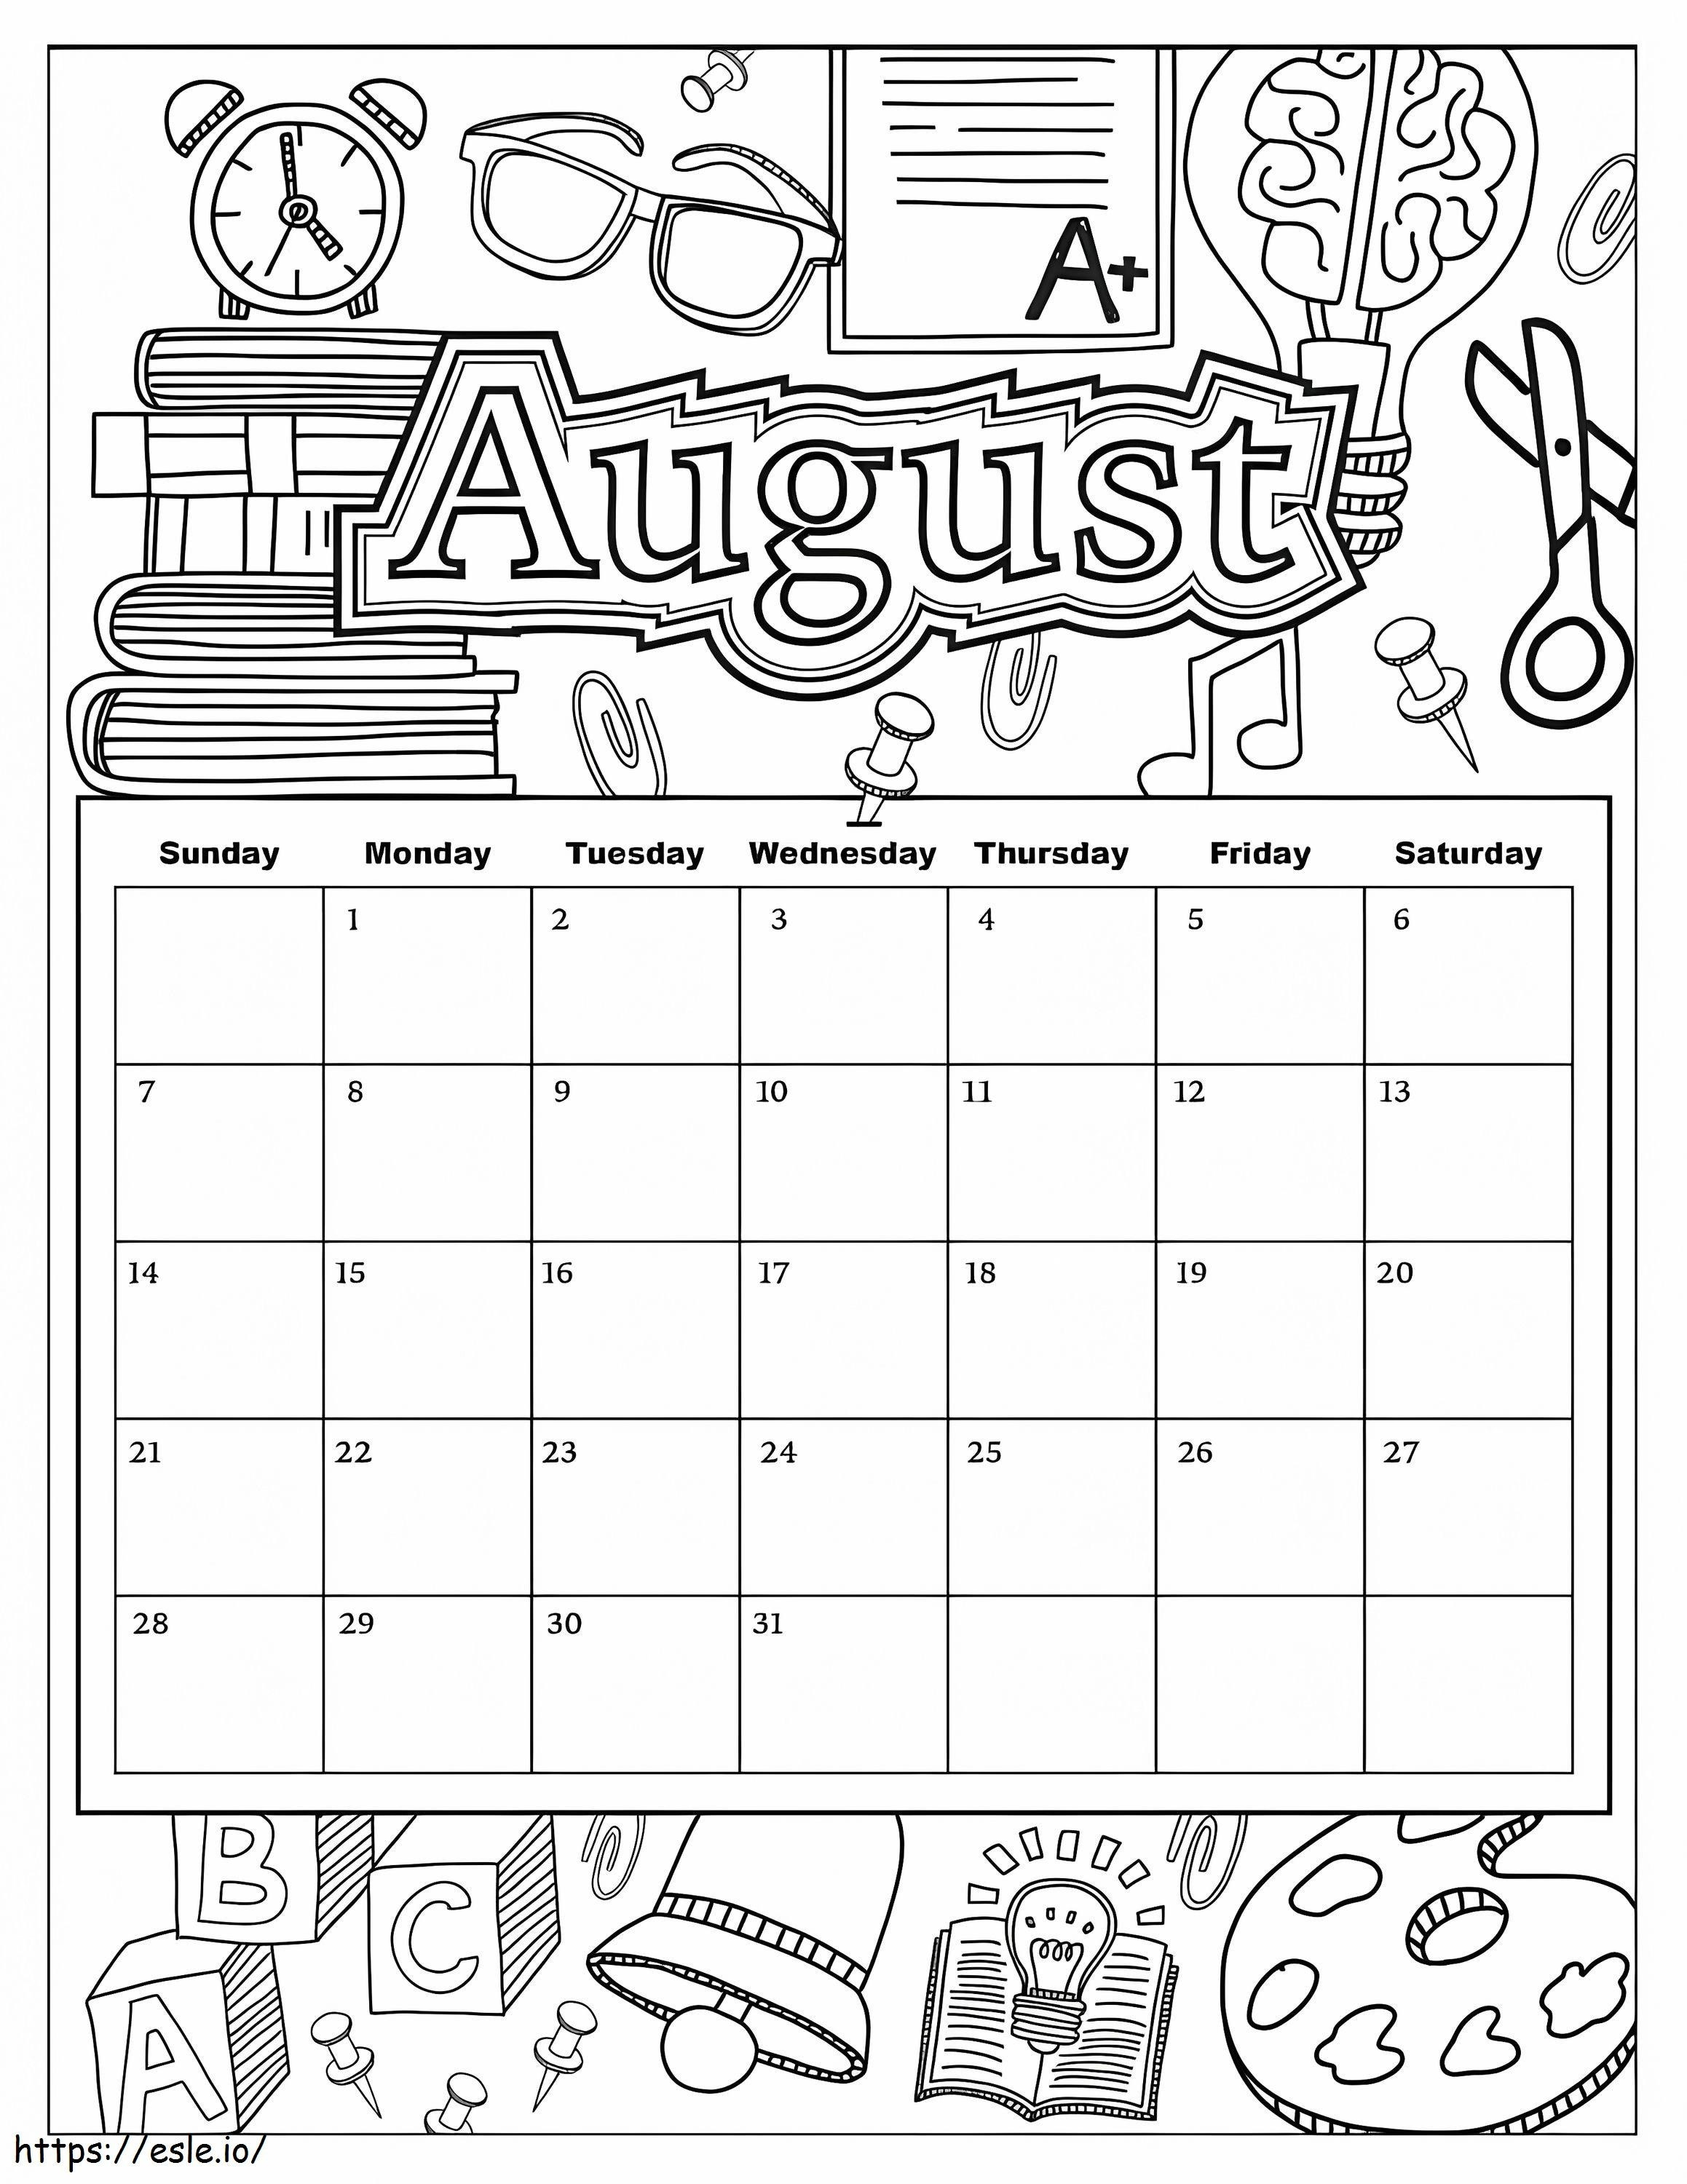 Calendario agosto para colorear